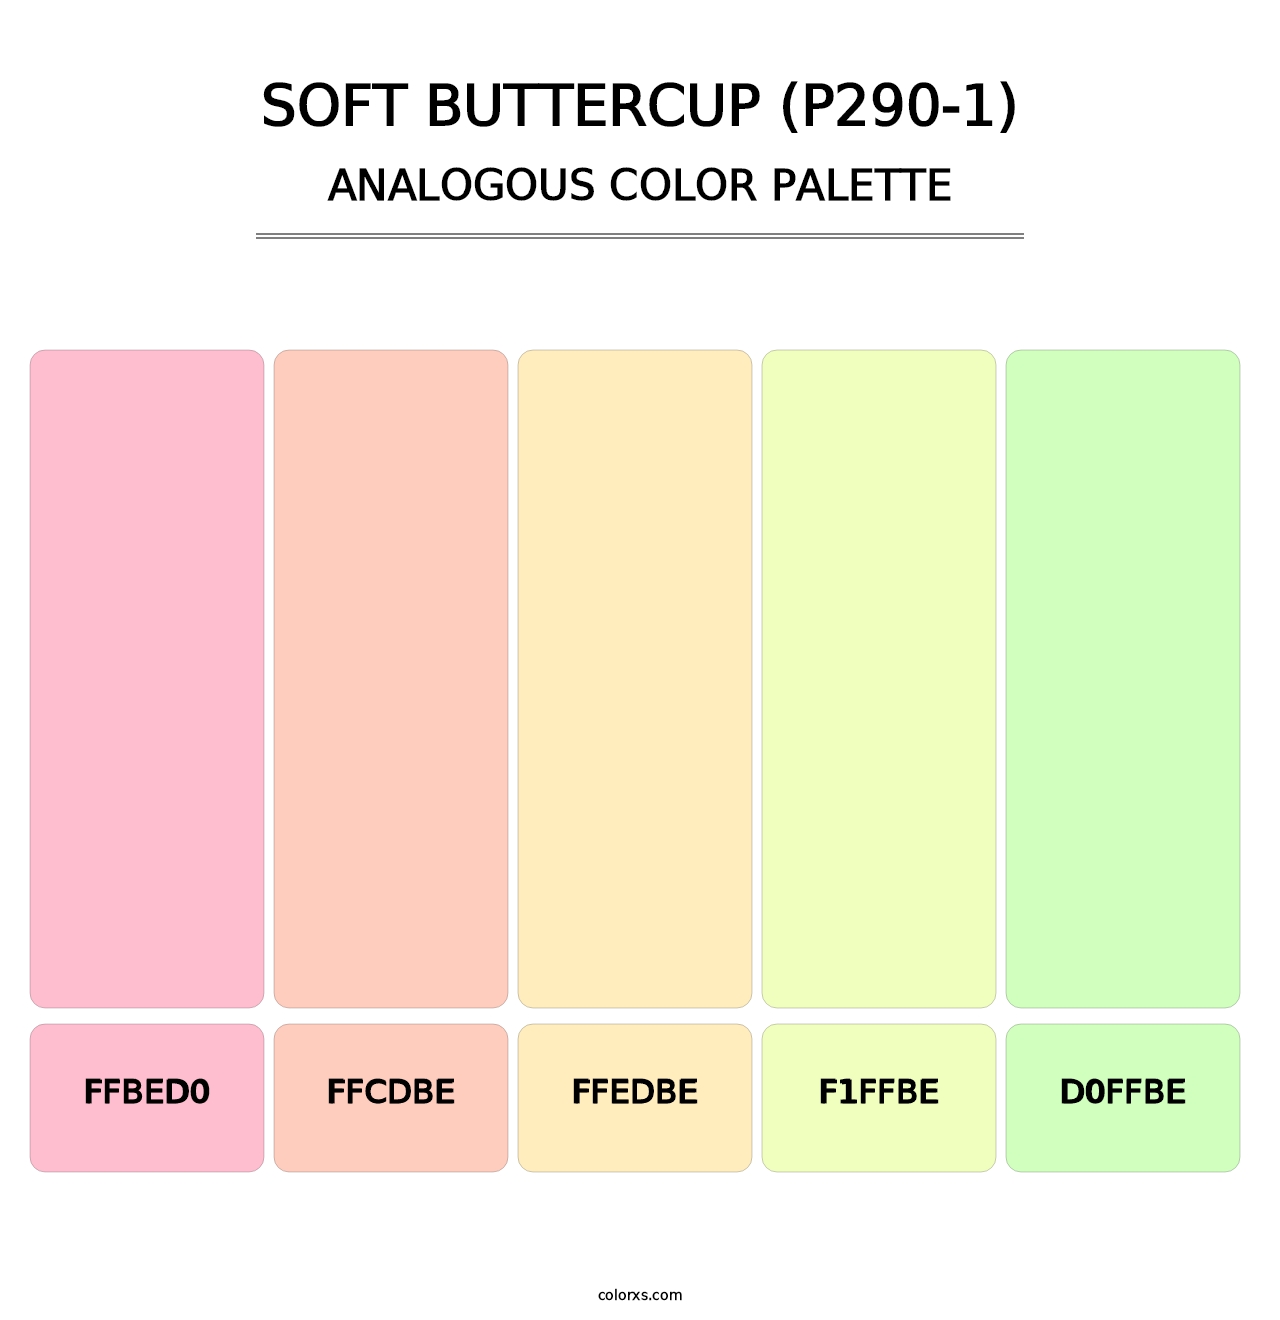 Soft Buttercup (P290-1) - Analogous Color Palette